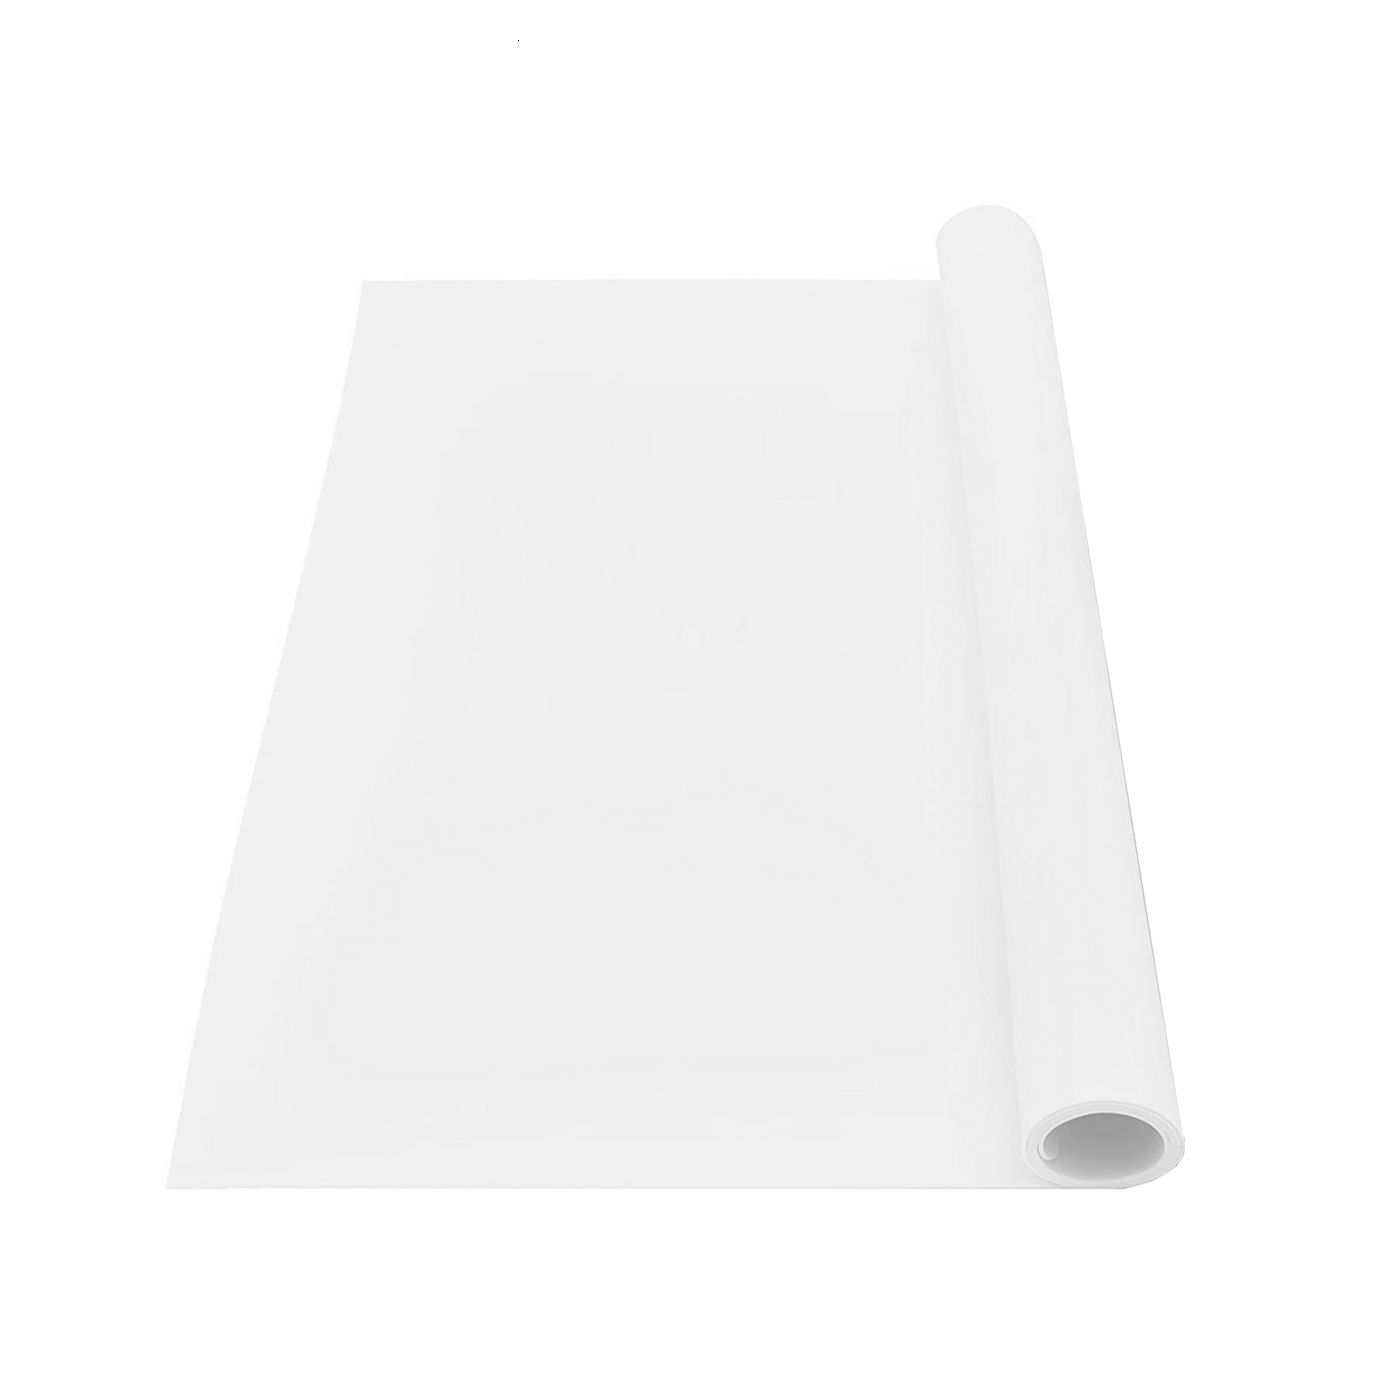 Bianco traslucido-60 x 50 cm